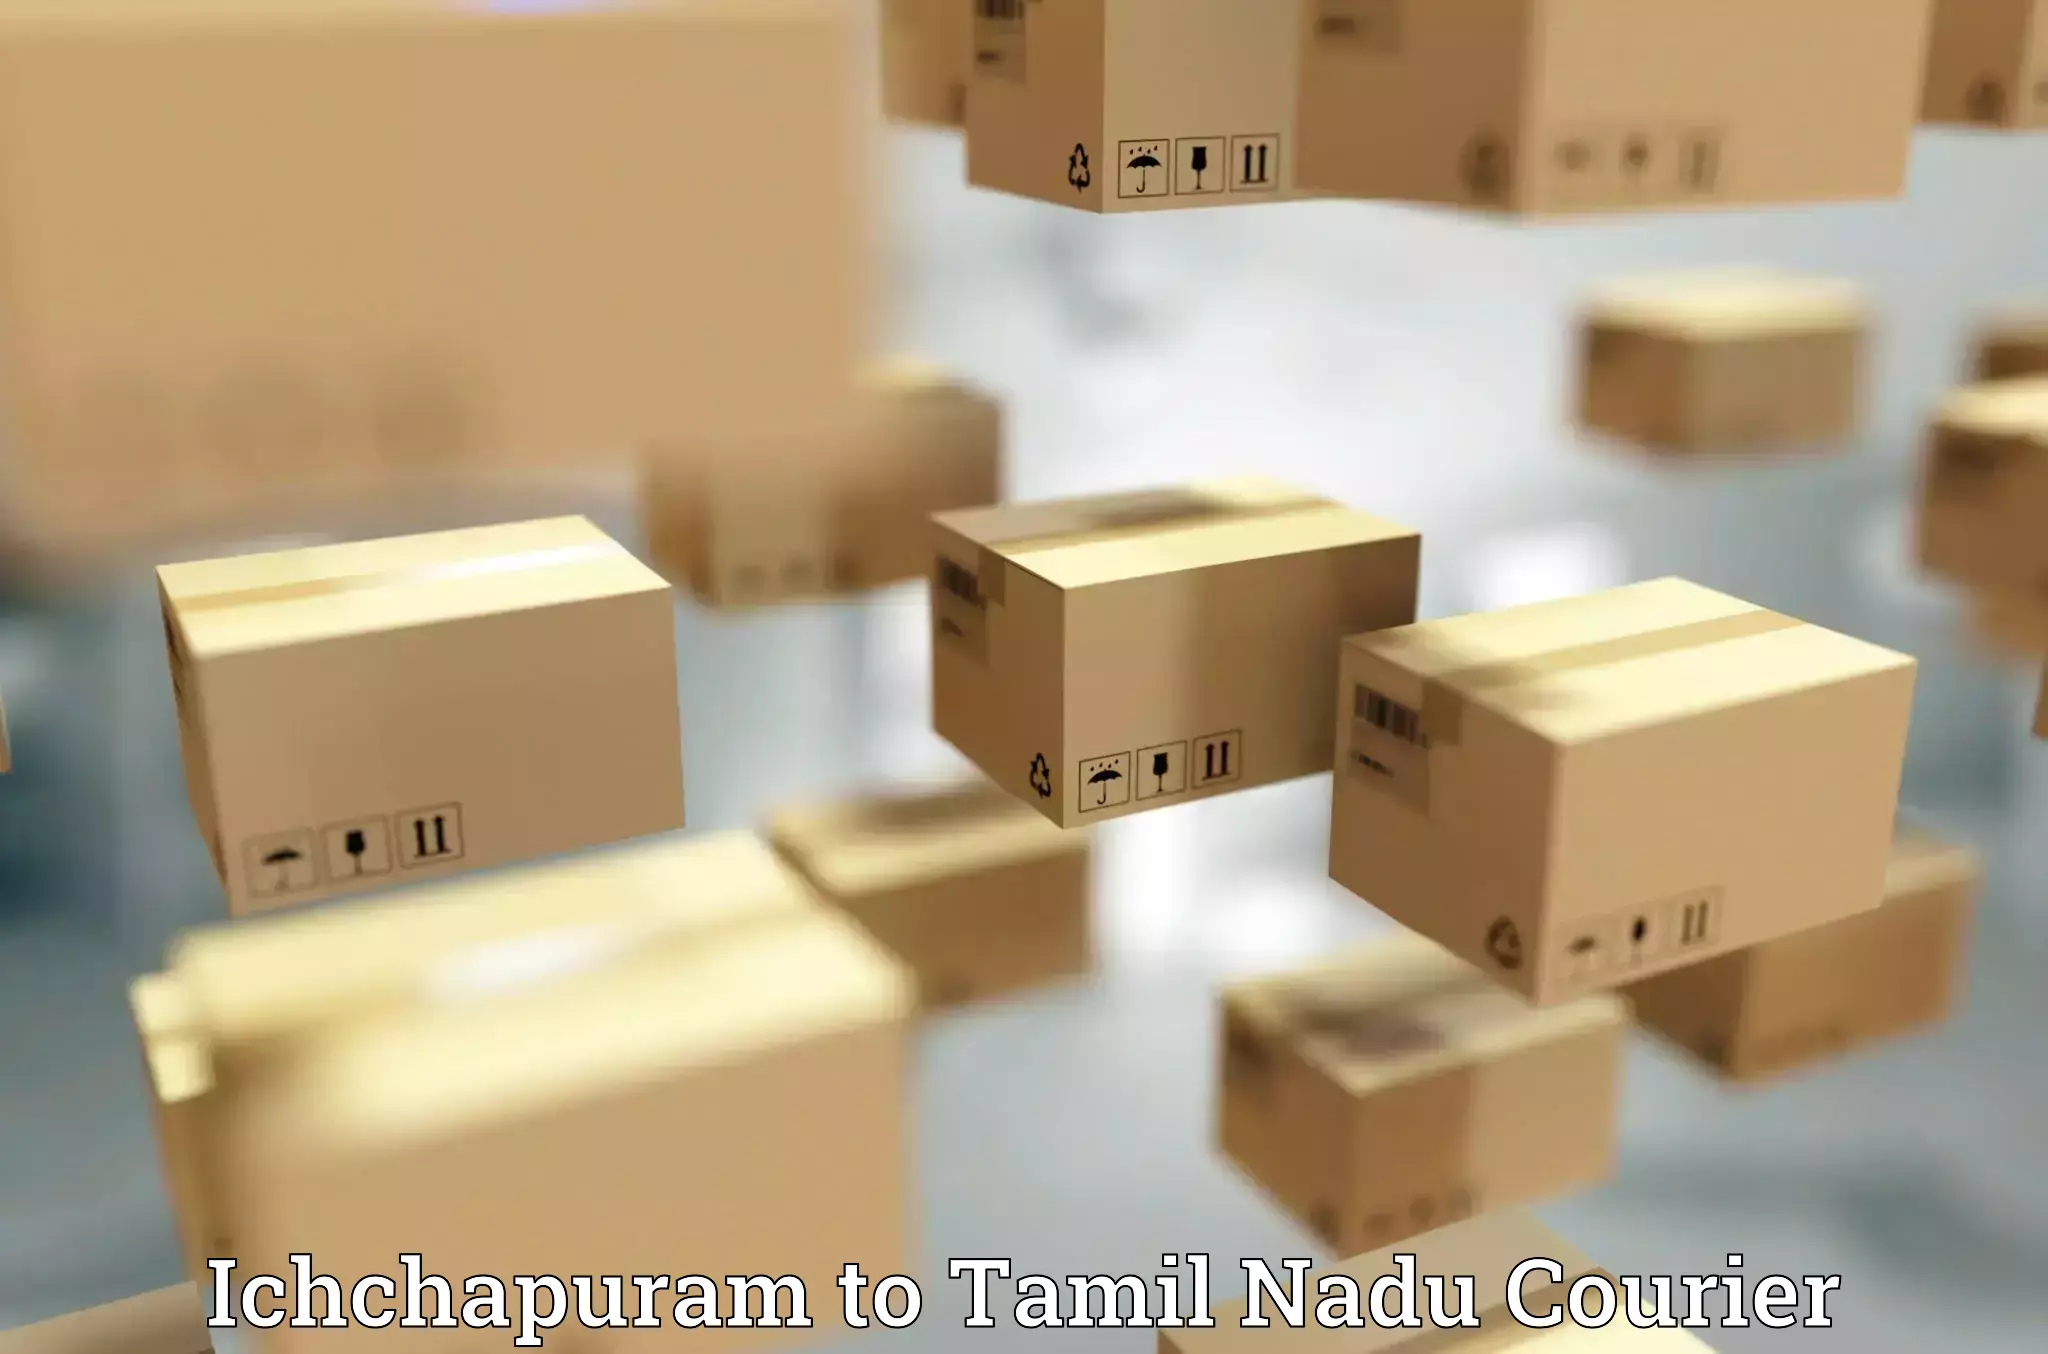 Urgent courier needs Ichchapuram to Tamil Nadu